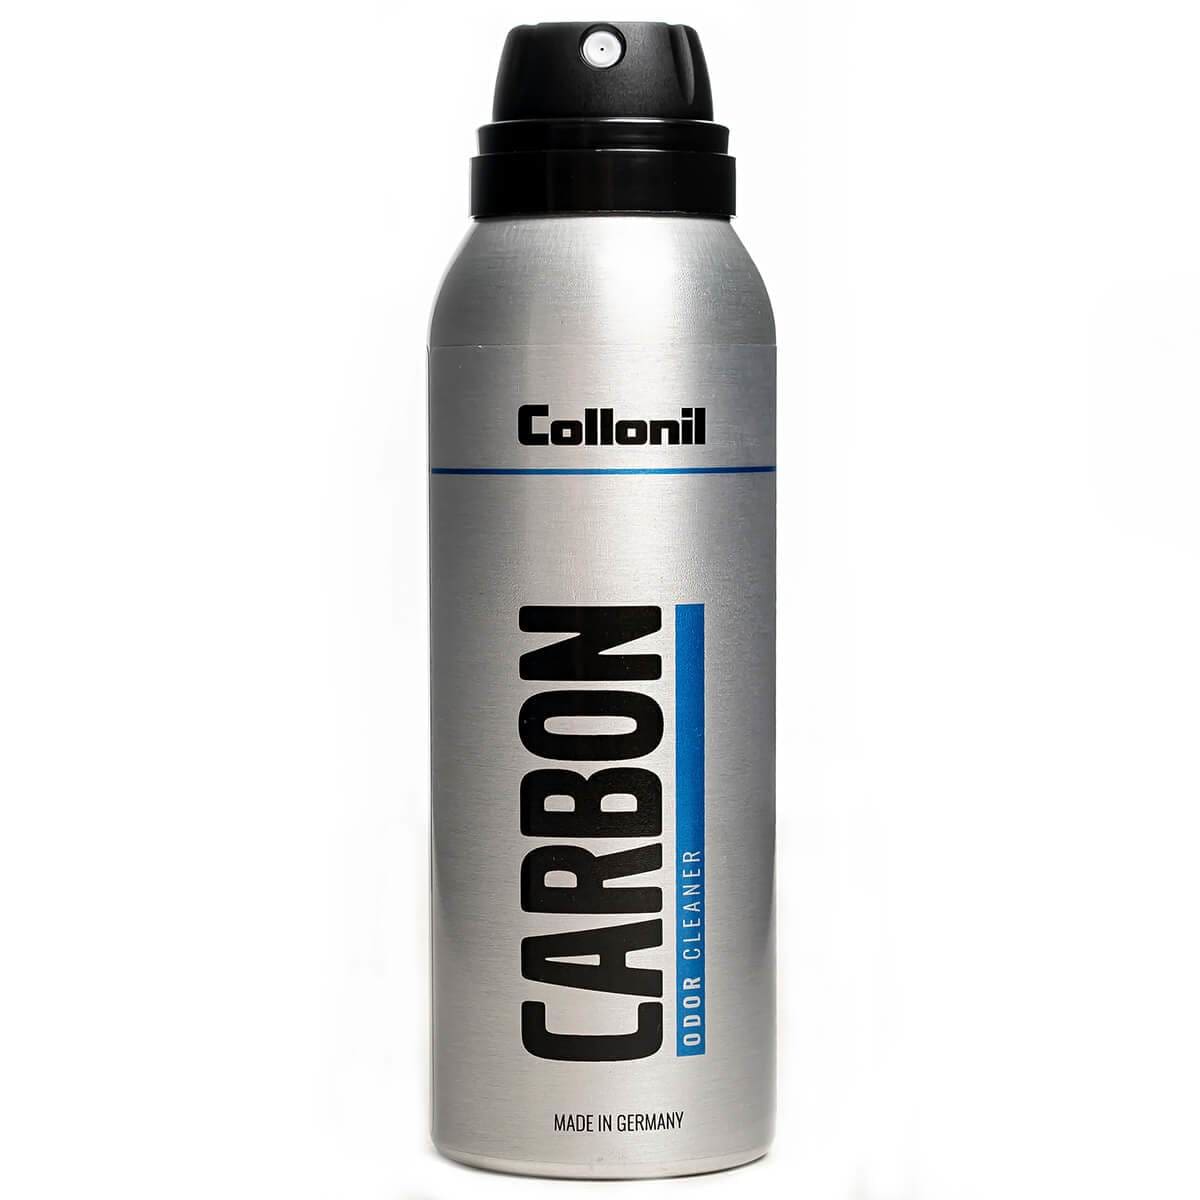 CARBON LAB Odor Cleaner - Produits pour l’entretien de chaussures